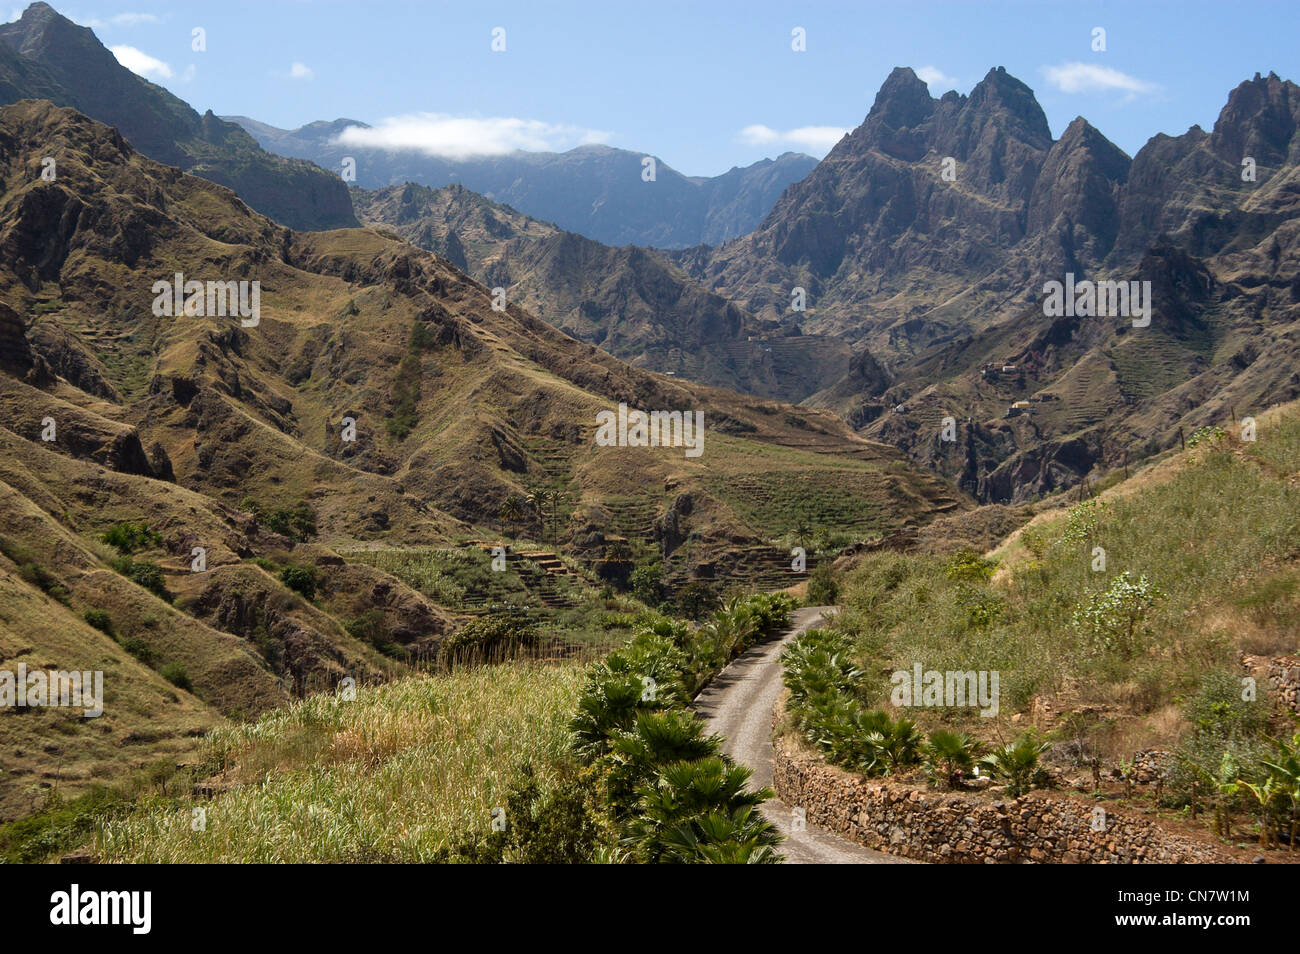 Cape Verde, Santo Antao island, Ribeira Grande, entered of the valley Stock Photo